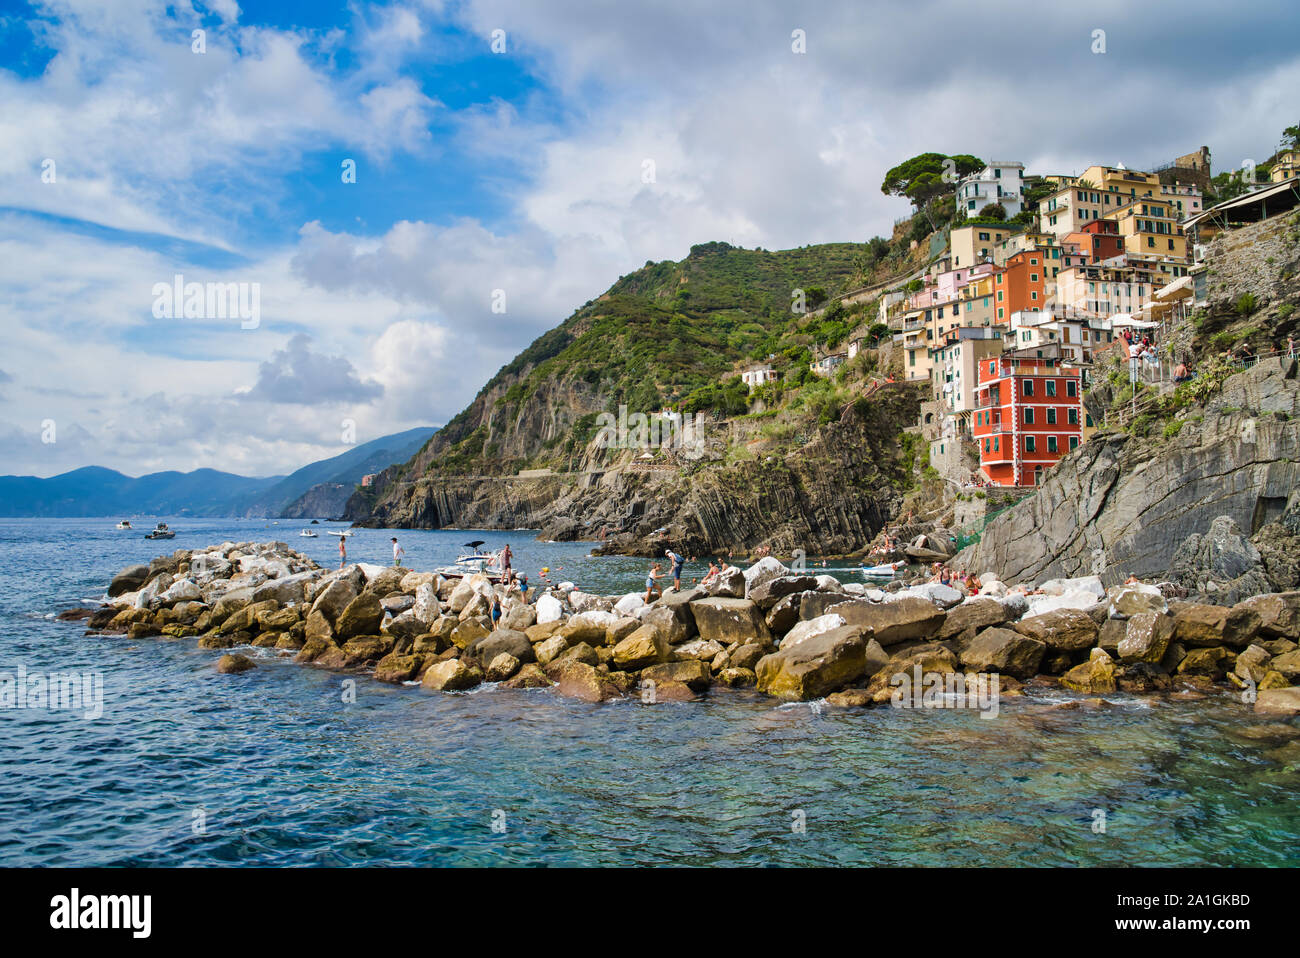 Riomaggiore Cinque Terre, Italia - Agosto 17, 2019: villaggio sul mare baia, case colorate sulla costa rocciosa. L'area protetta dei Monti ​​the. Foto Stock